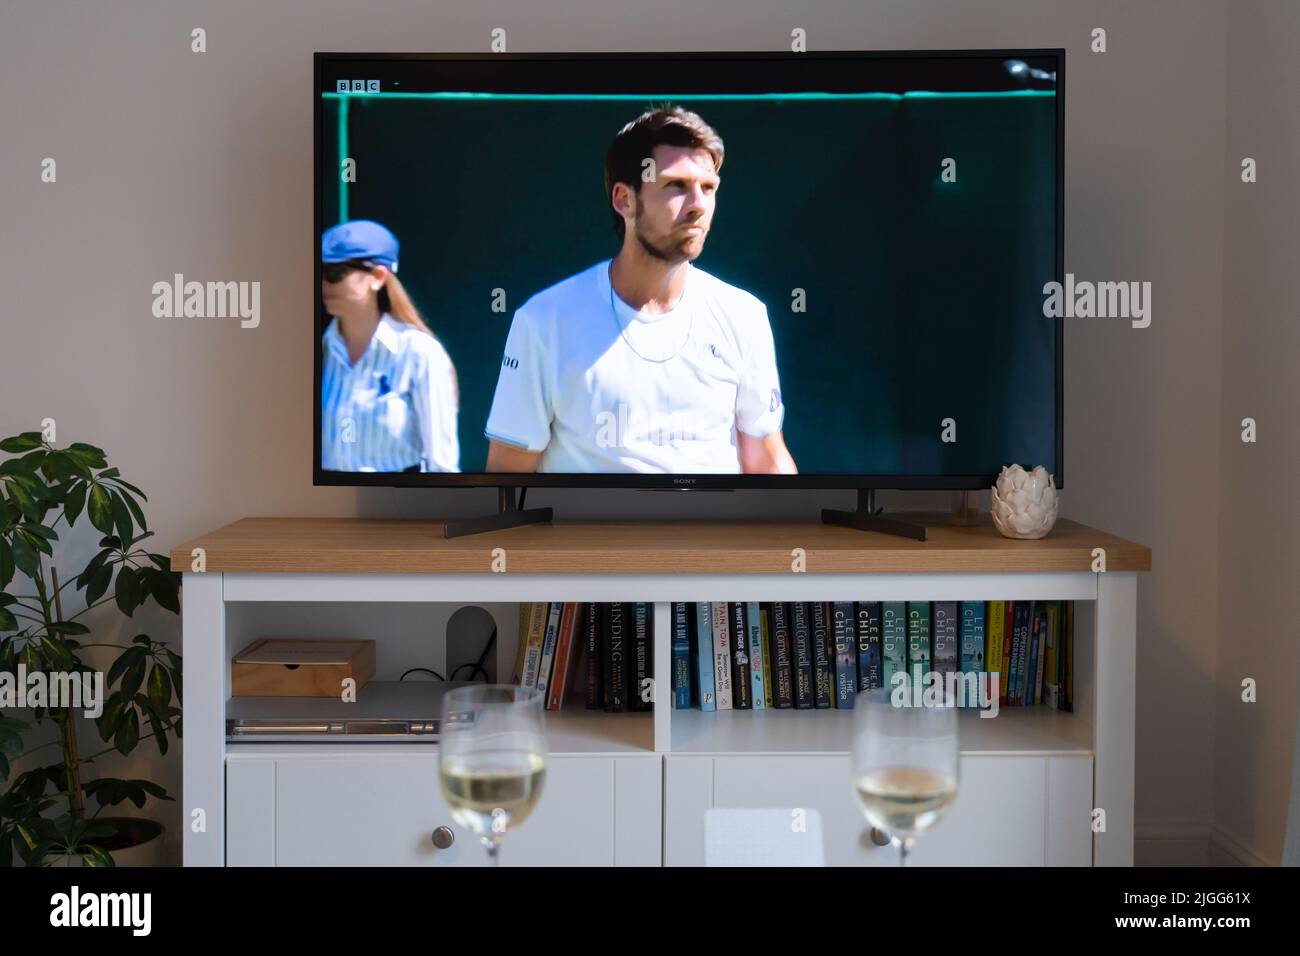 Cameron Norrie durante su semifinal de tenis masculino de Wimbledon 2022 contra Novak Djokovic el 8th de julio de 2022 en una televisión de pantalla plana en un salón. REINO UNIDO Foto de stock